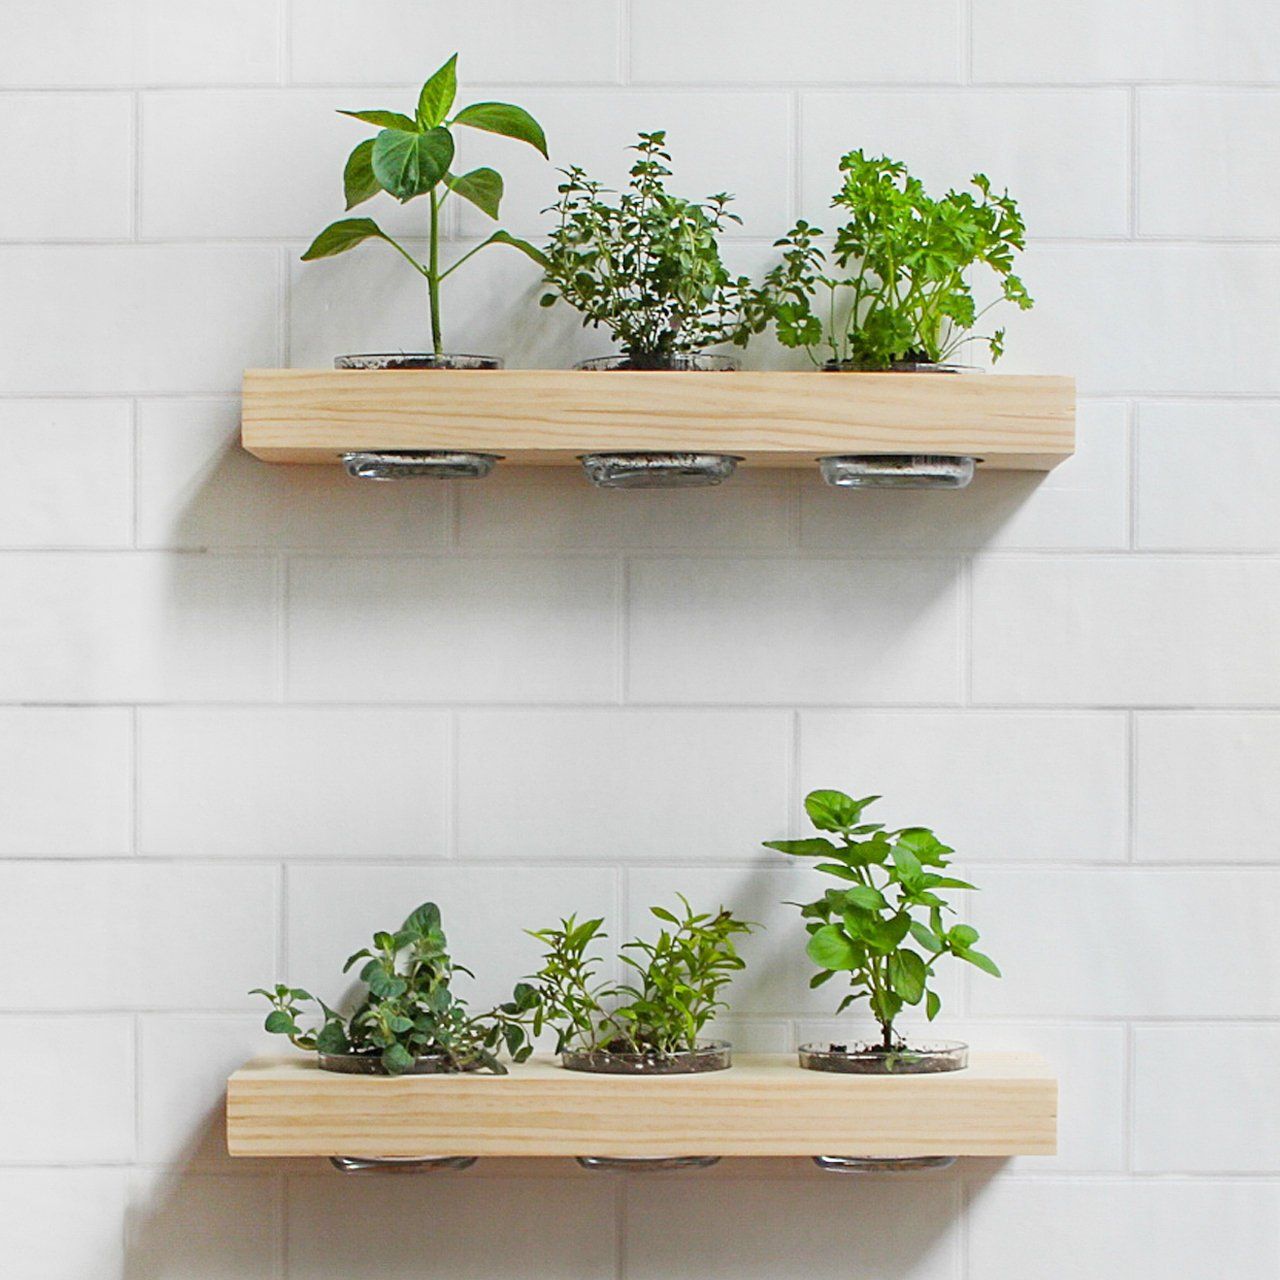 Herb Garden Indoor Ideas